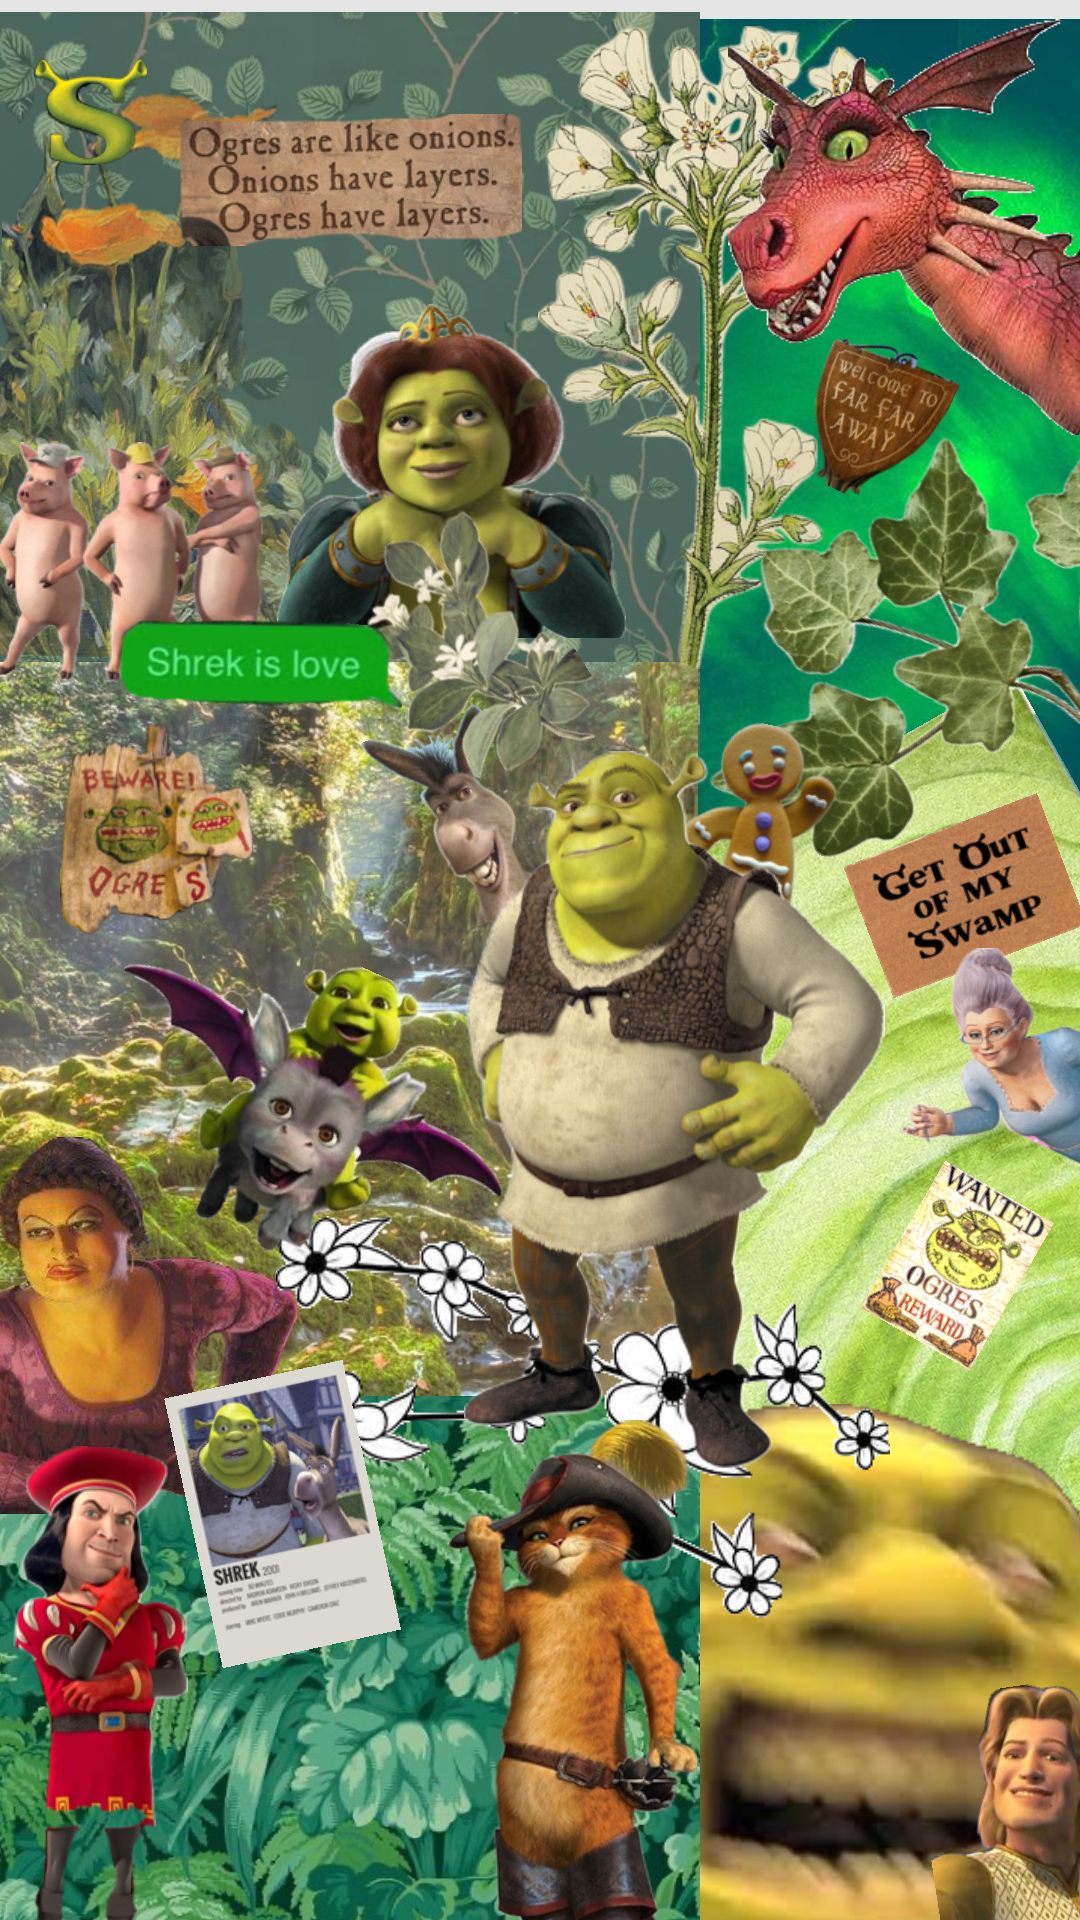 shrekisloveshrekislife #shrek. Shrek